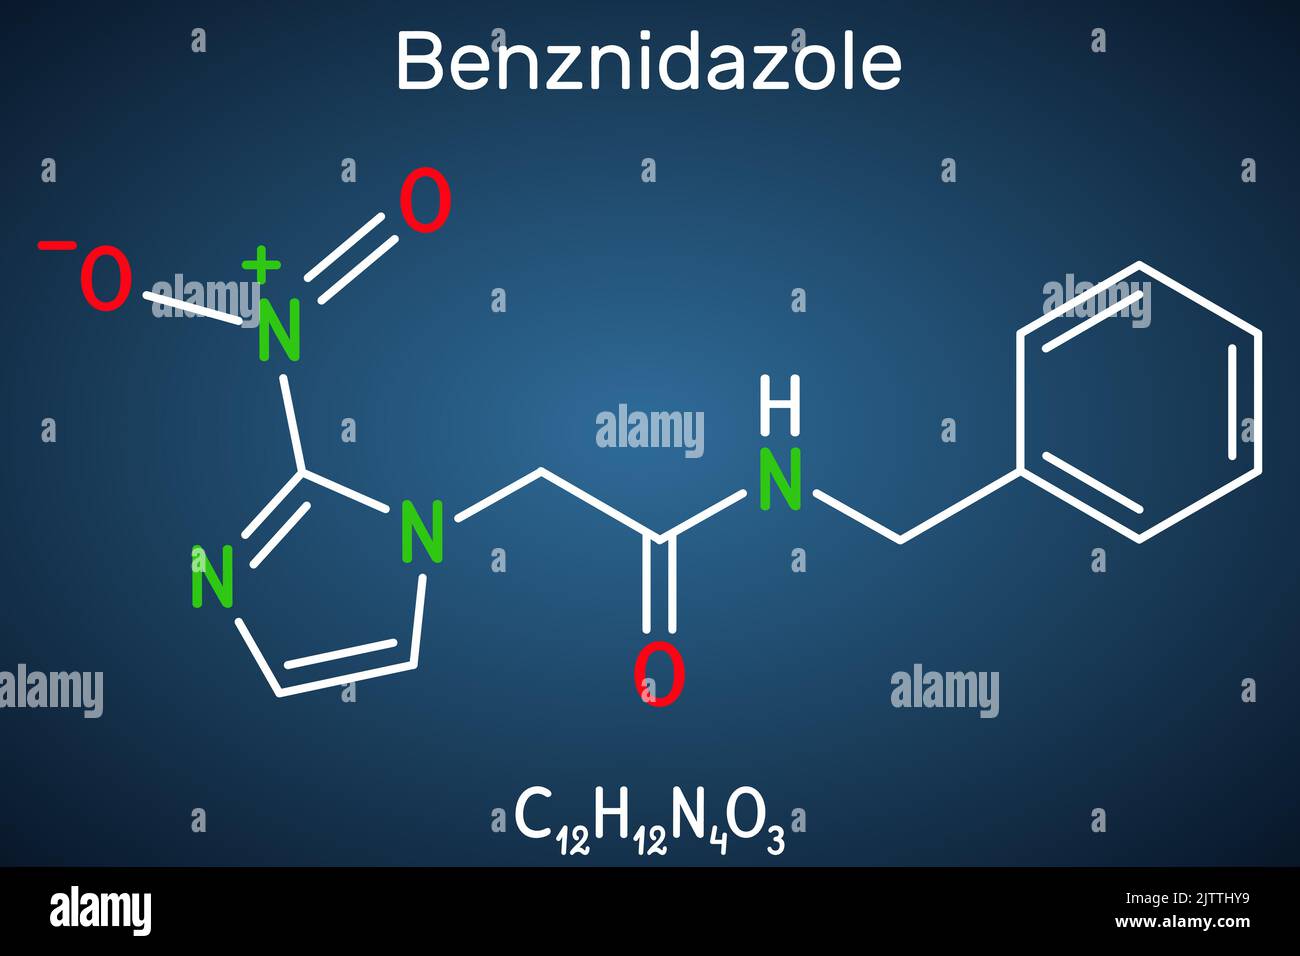 Benznidazol-Molekül. Es ist ein parasitäres Medikament, das bei der Behandlung der Chagas-Krankheit verwendet wird. Strukturelle chemische Formel auf dem dunkelblauen Hintergrund. Vect Stock Vektor